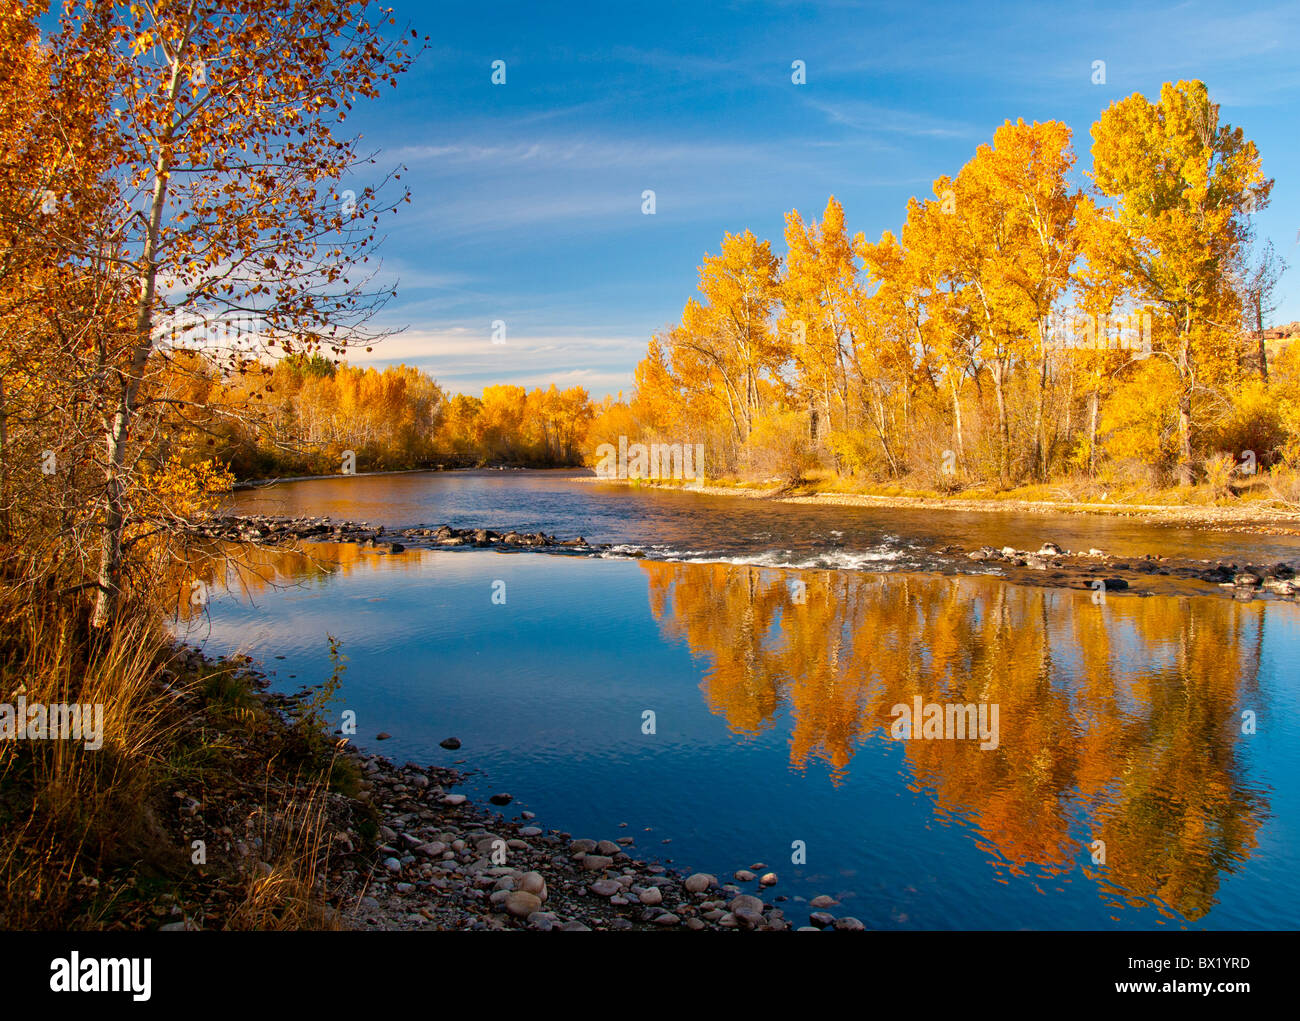 USA, Idaho, Stadt Boise, malerischen Blick auf Pappeln reflektieren Herbstfarben in Boise River, Boise River Greenbelt Stockfoto